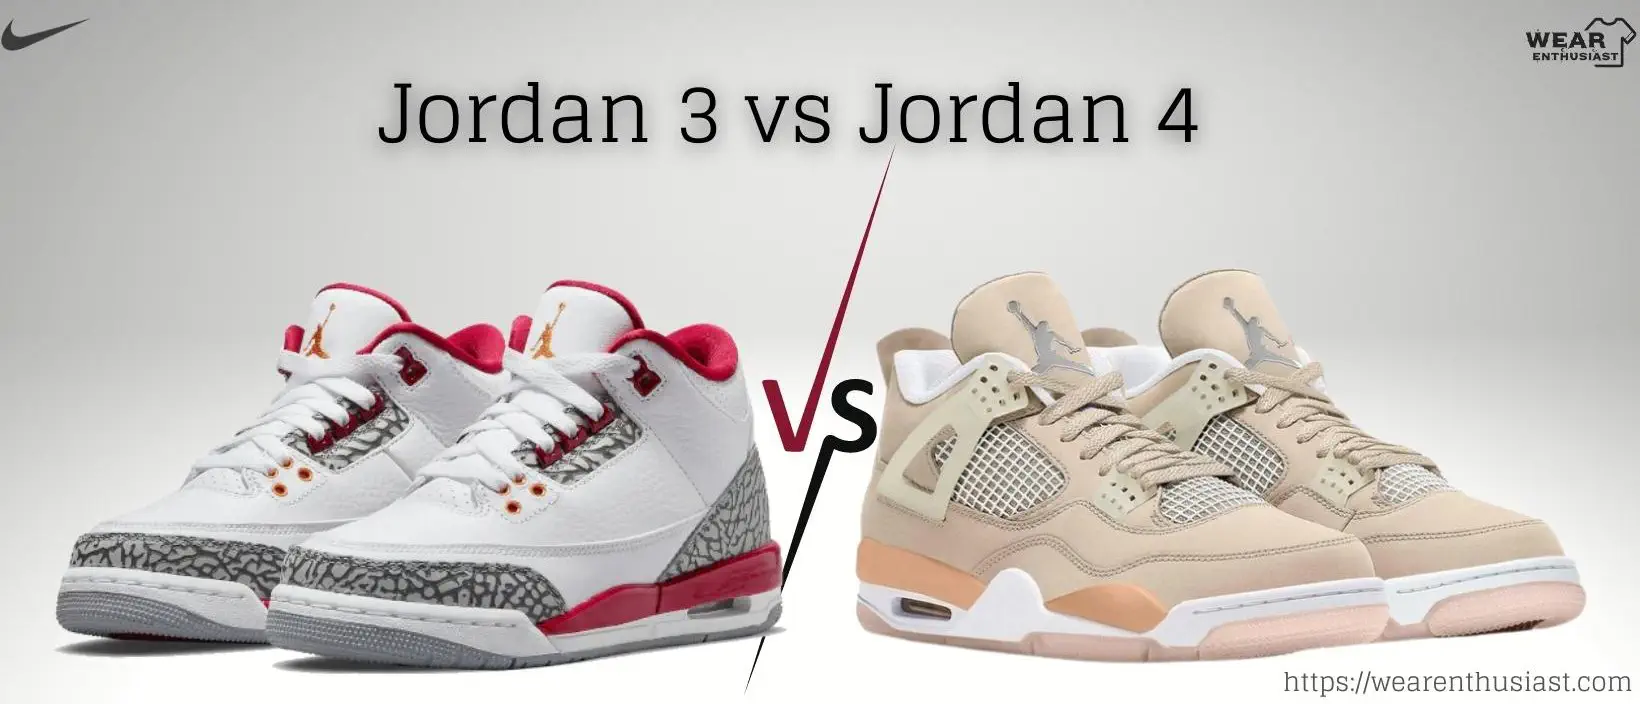 Jordan 3 vs 4